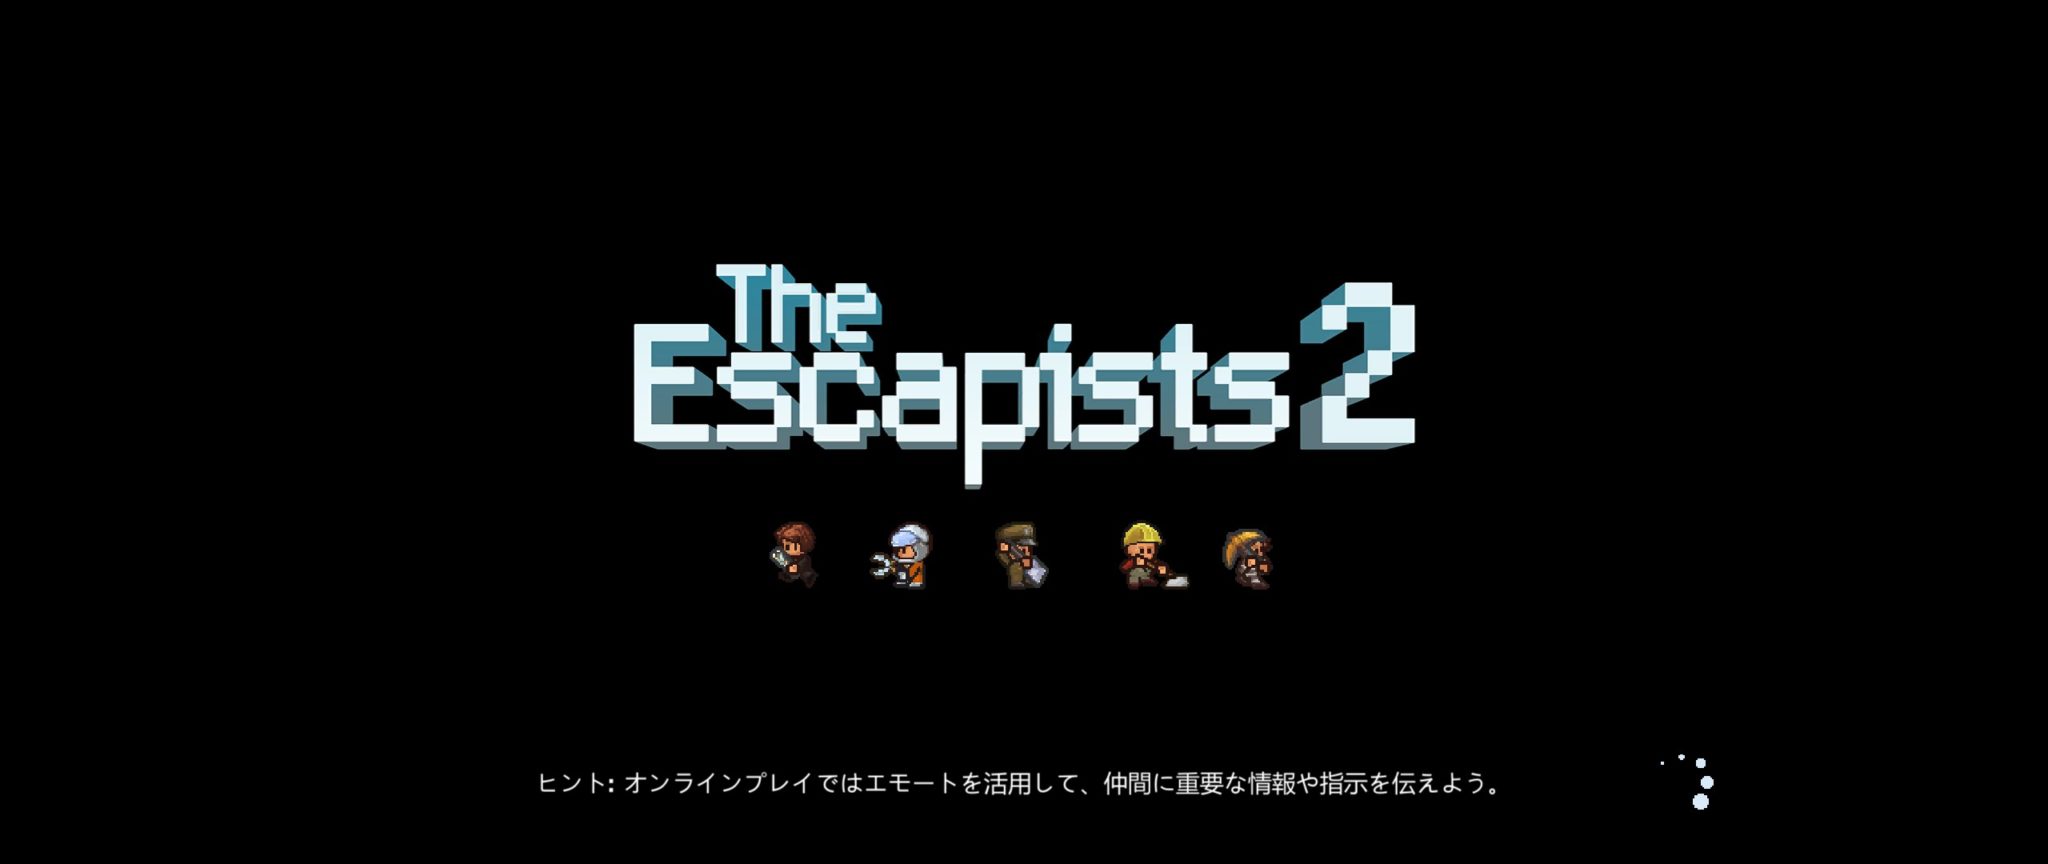 The Escapists 2 エスケーピスト2 をプレイしてみた感想 レビュー 光る原人